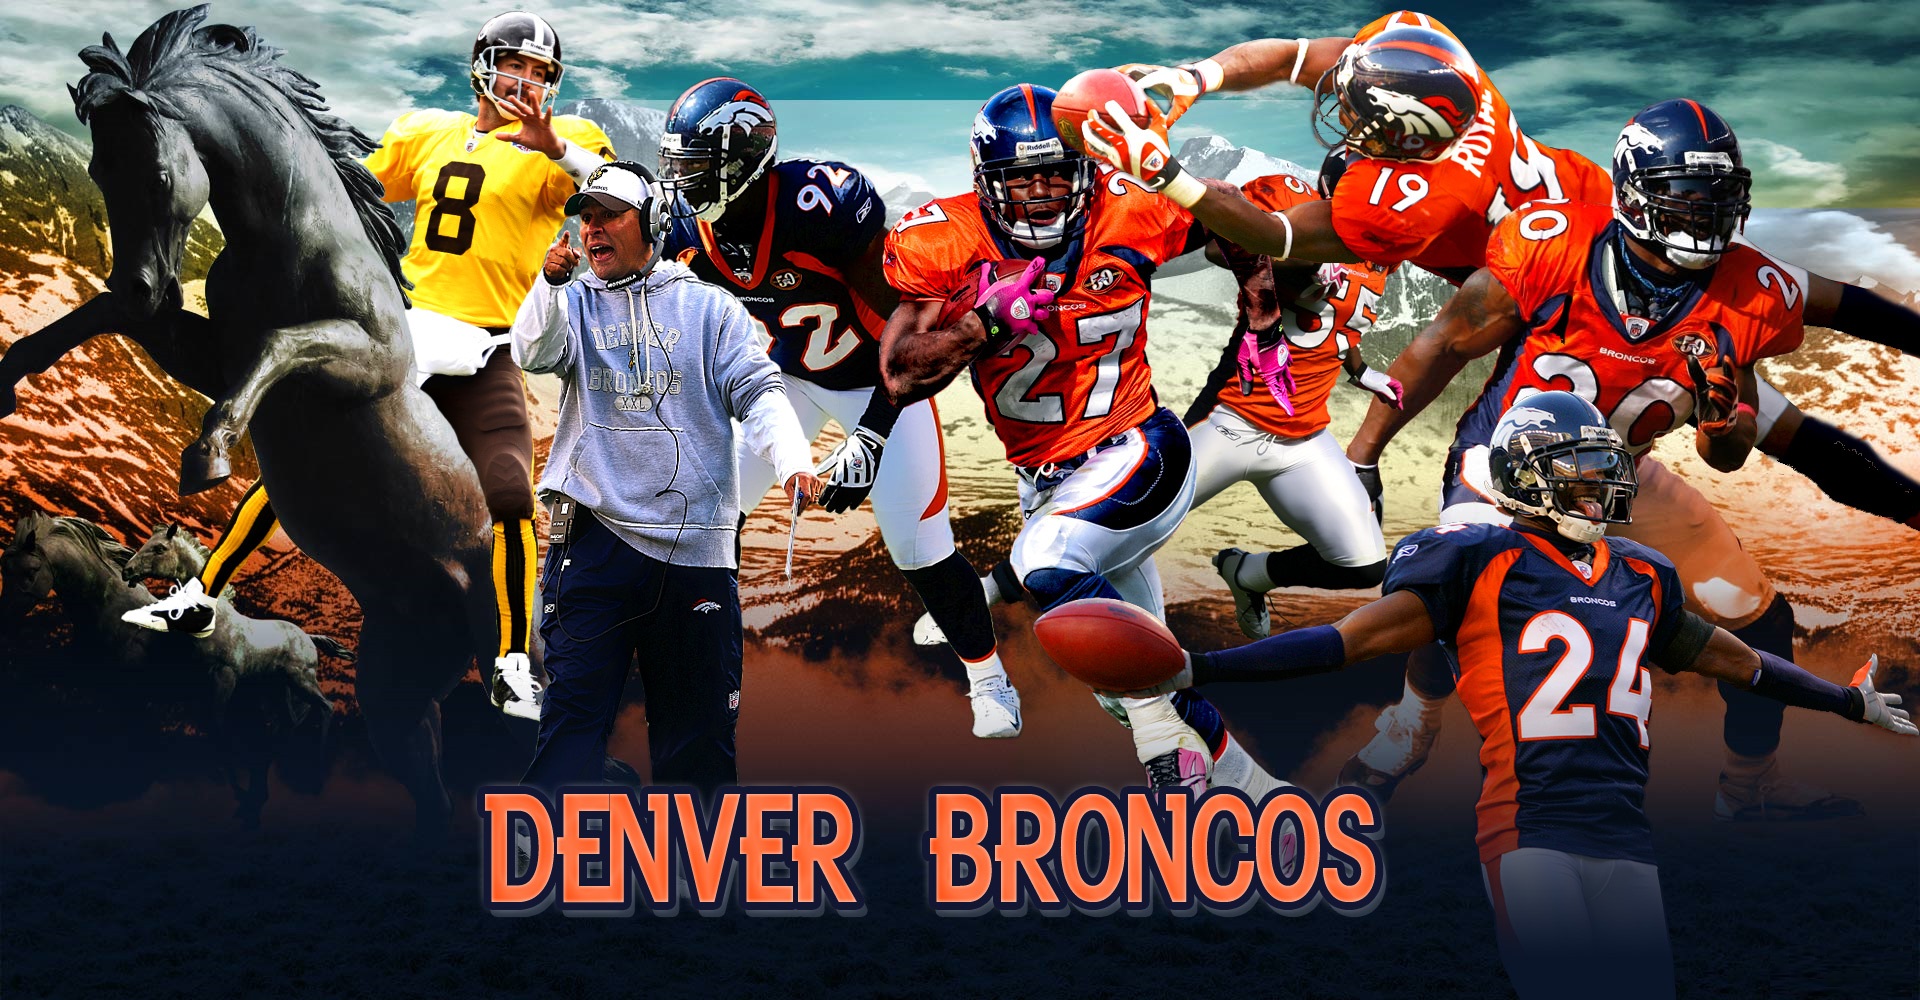 Denver Broncos wallpaper  Denver Broncos wallpapers